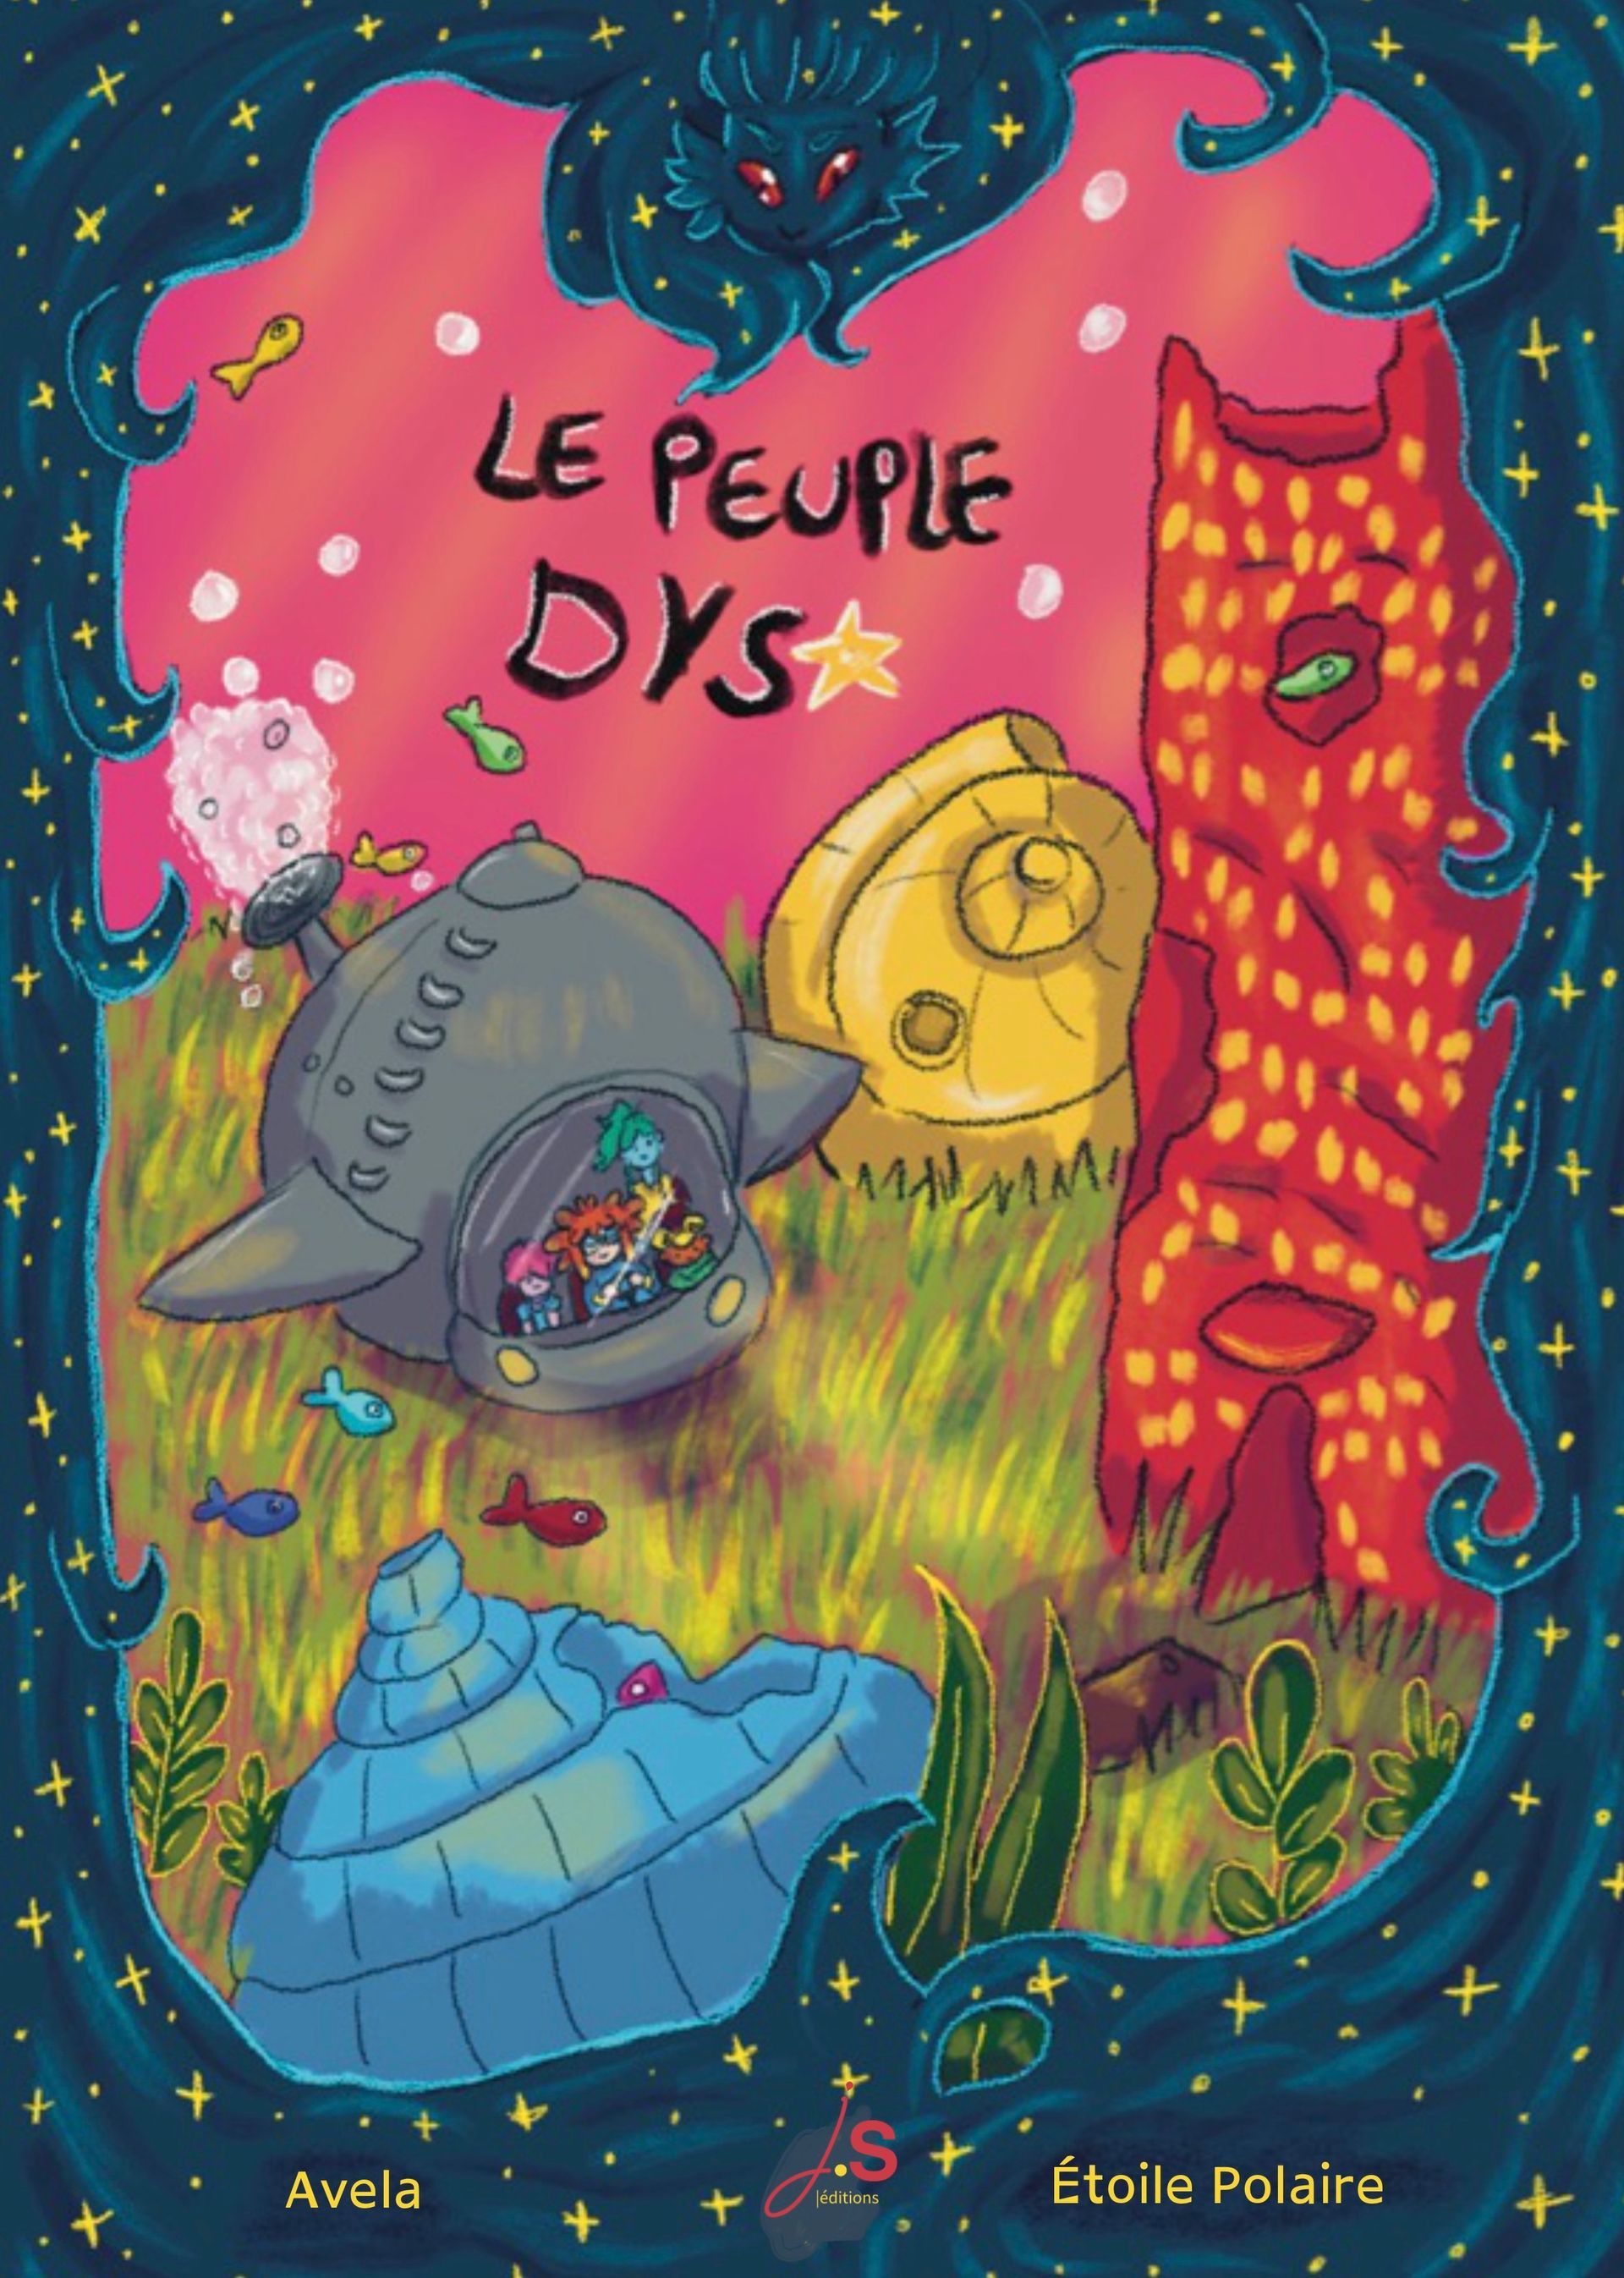 Couverture de la BD le peuple dys d'Avela et Autrice Étoile Polaire. Dans un cadre étoilé, une illustration des 4 personnages principaux dans un sous-marin. Décor sous-marin coloré avec des maisons en ruines.